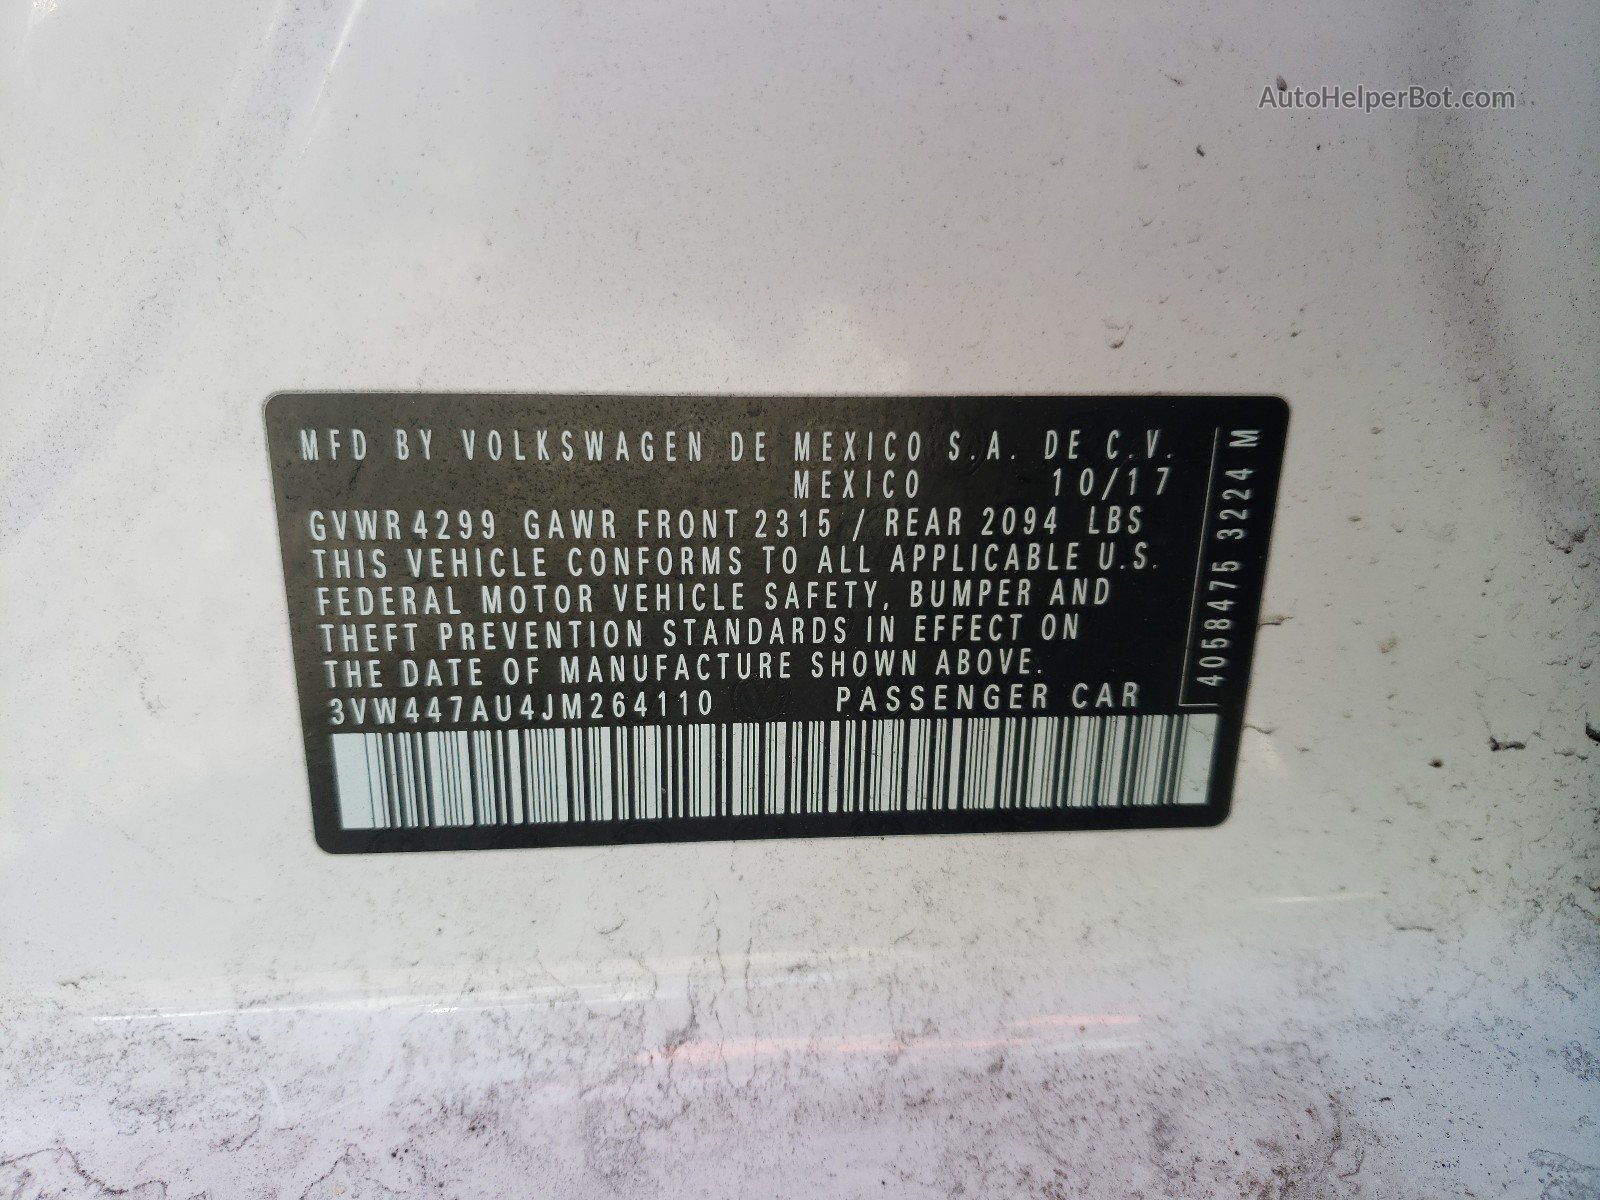 2018 Volkswagen Gti S/se Белый vin: 3VW447AU4JM264110